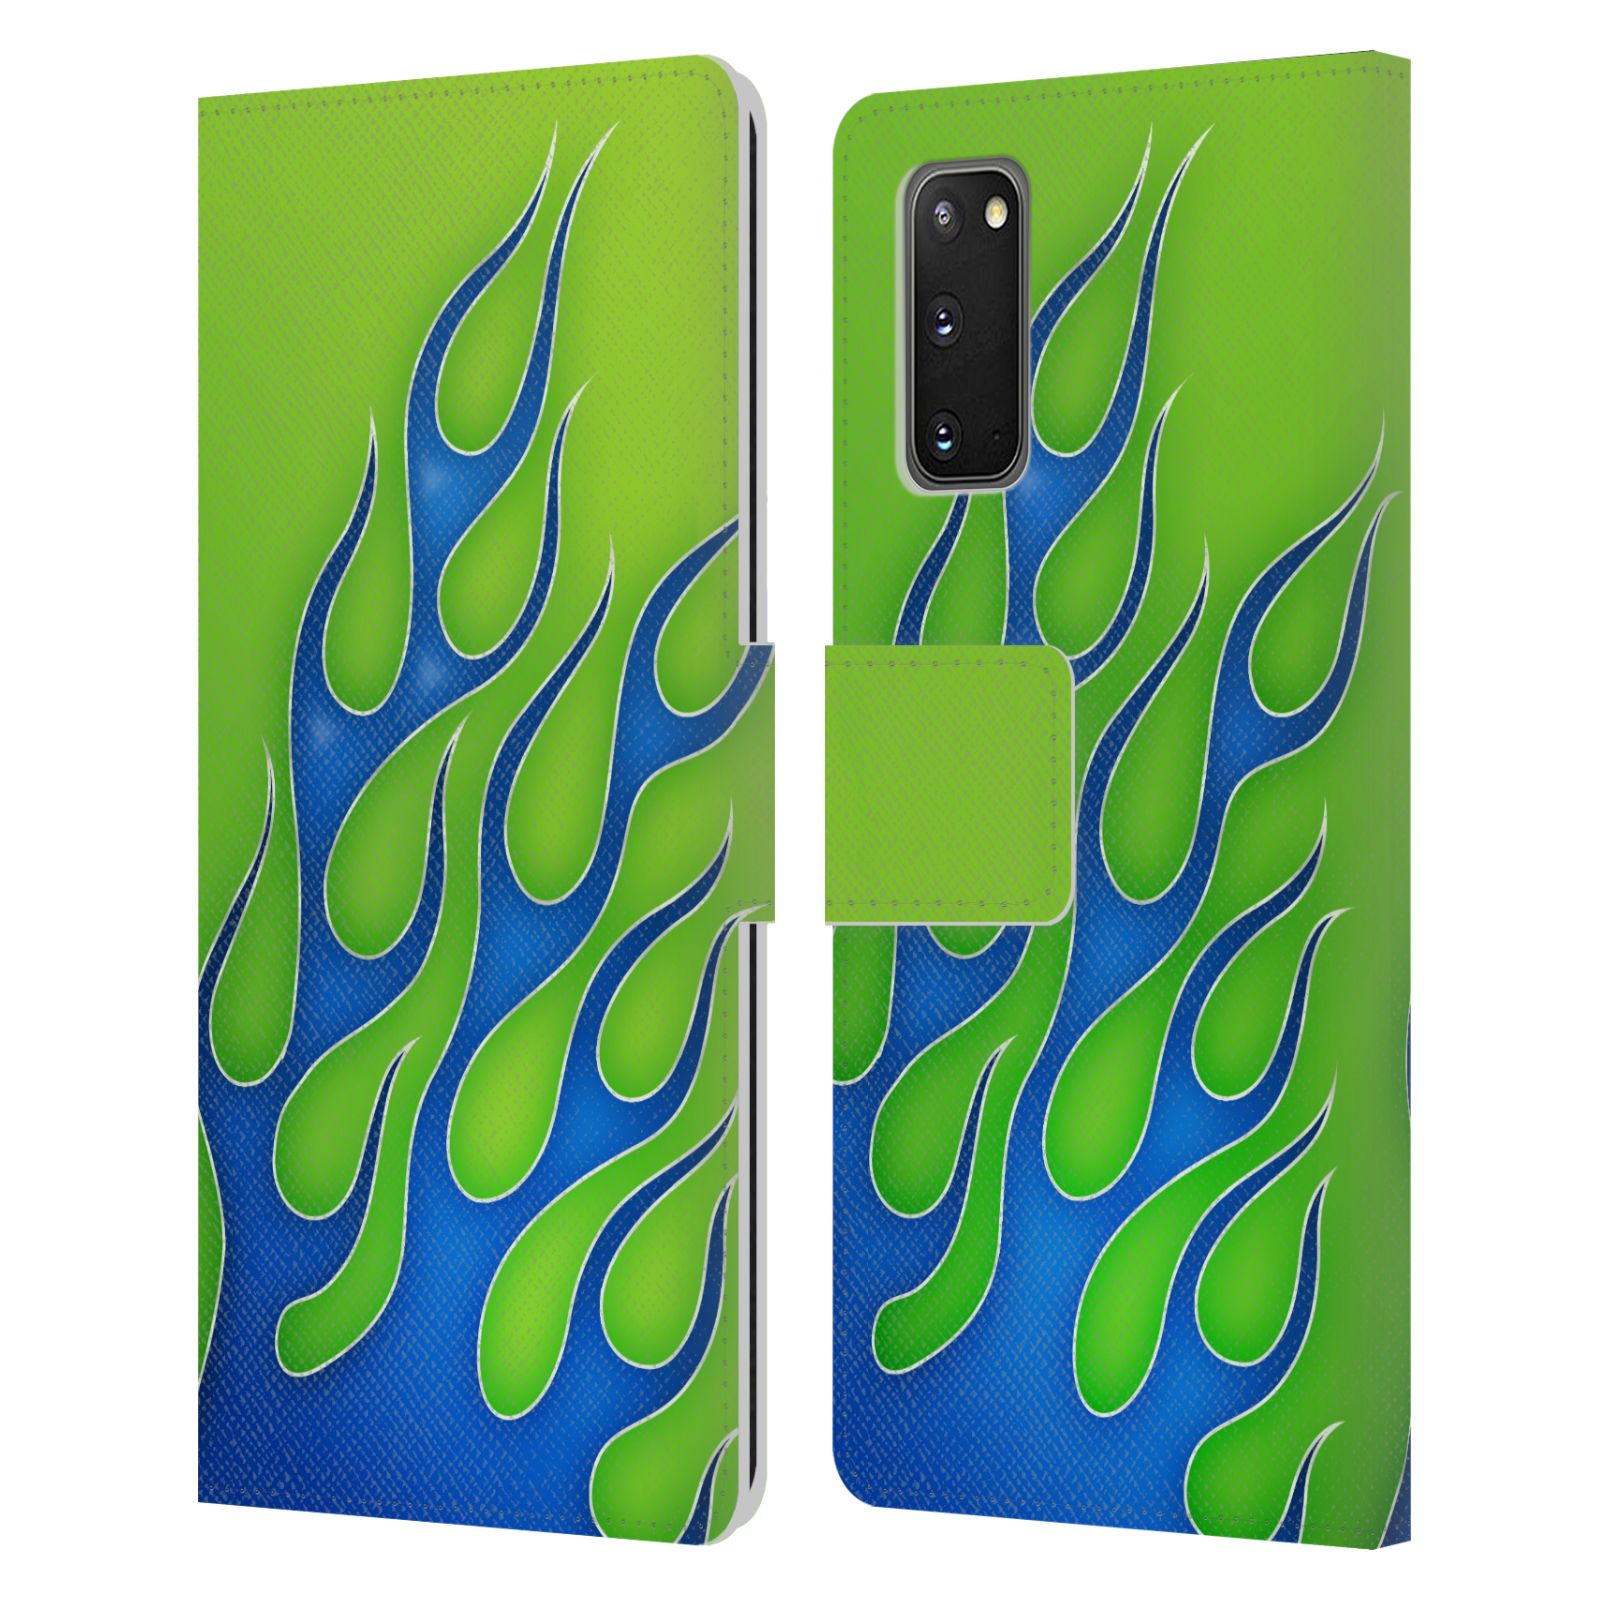 Pouzdro na mobil Samsung Galaxy S20 barevné ohnivé plameny modrá a zelená